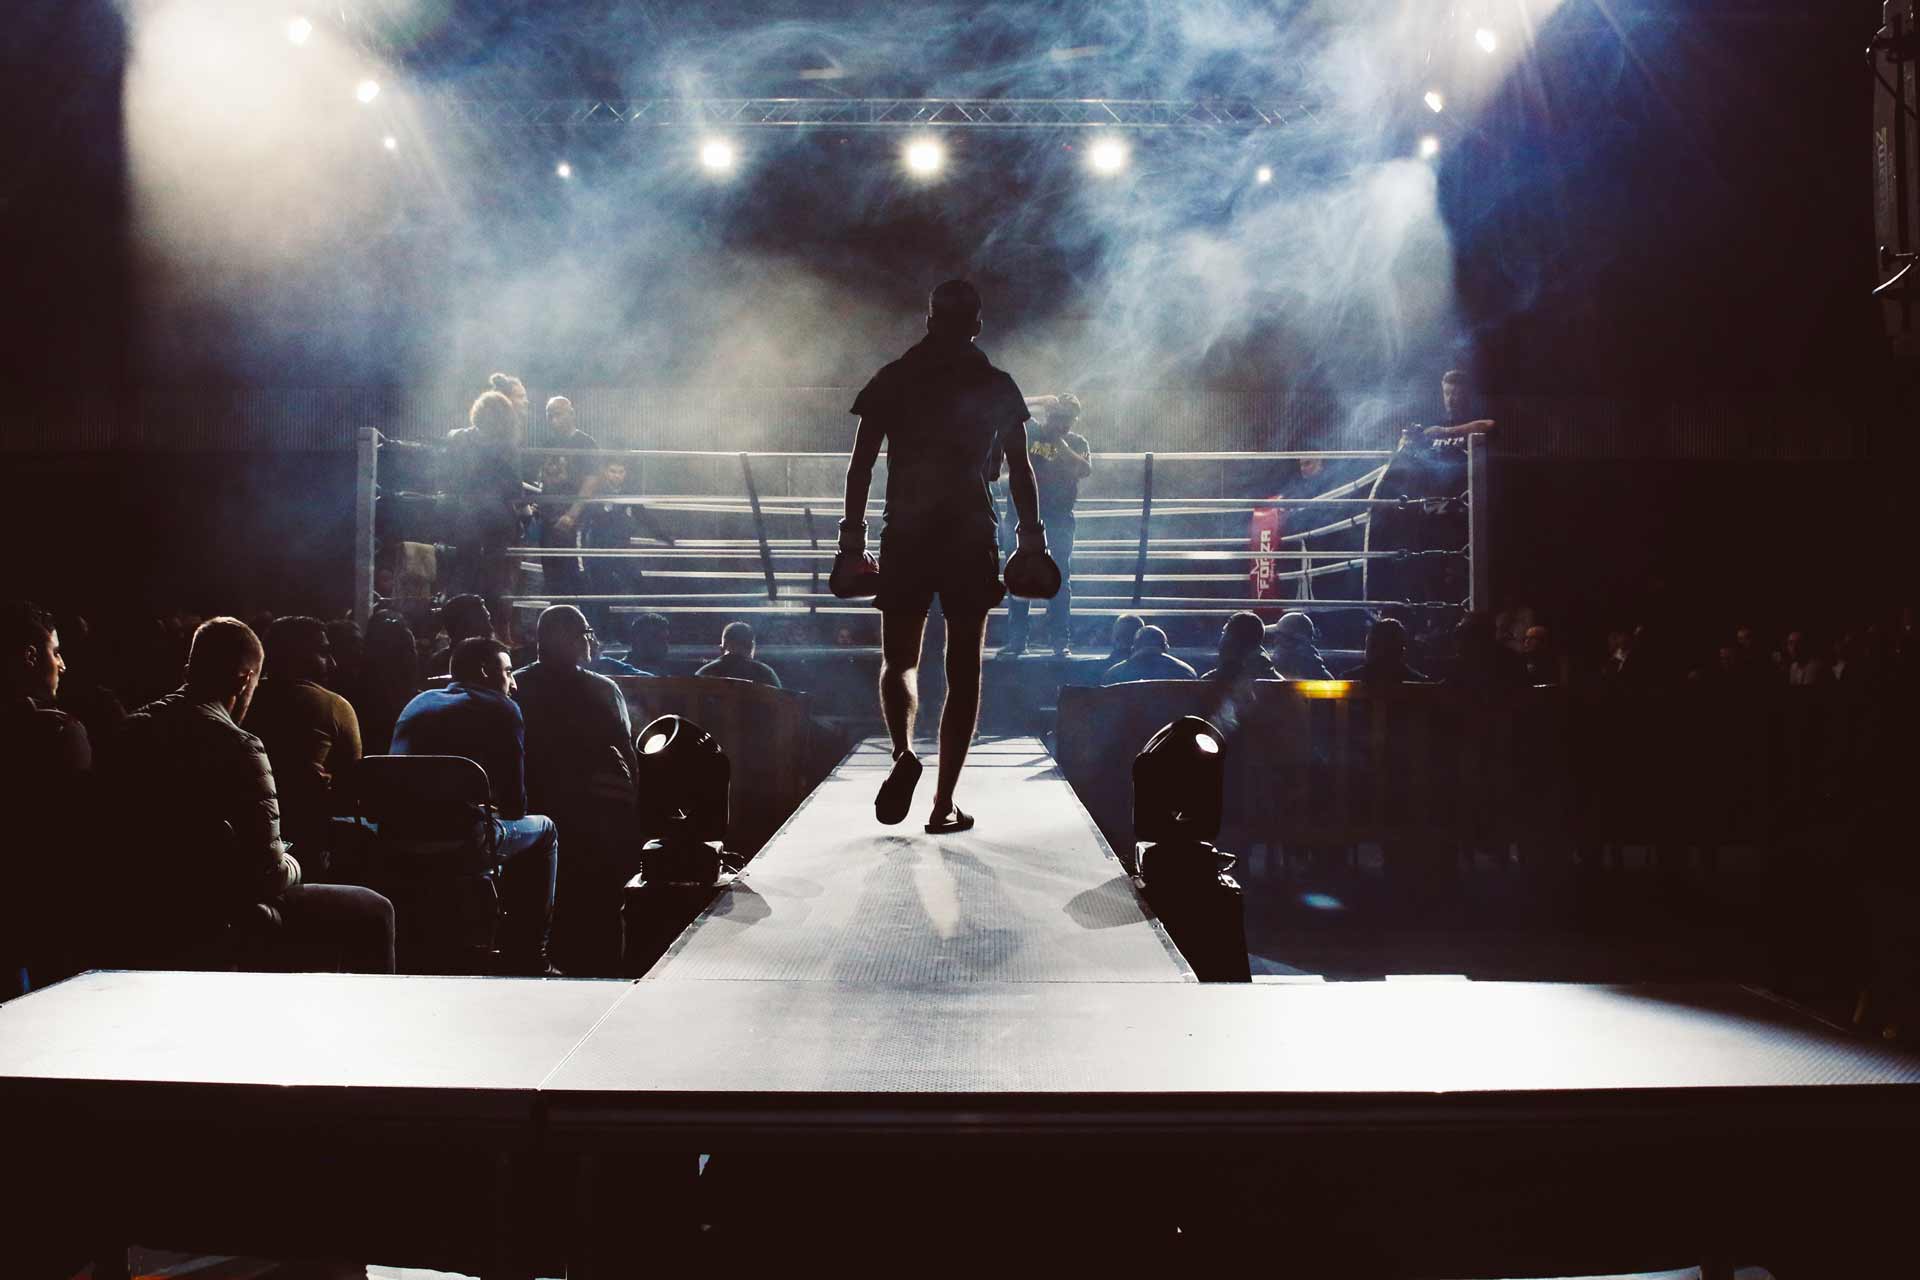 boxer entering ring